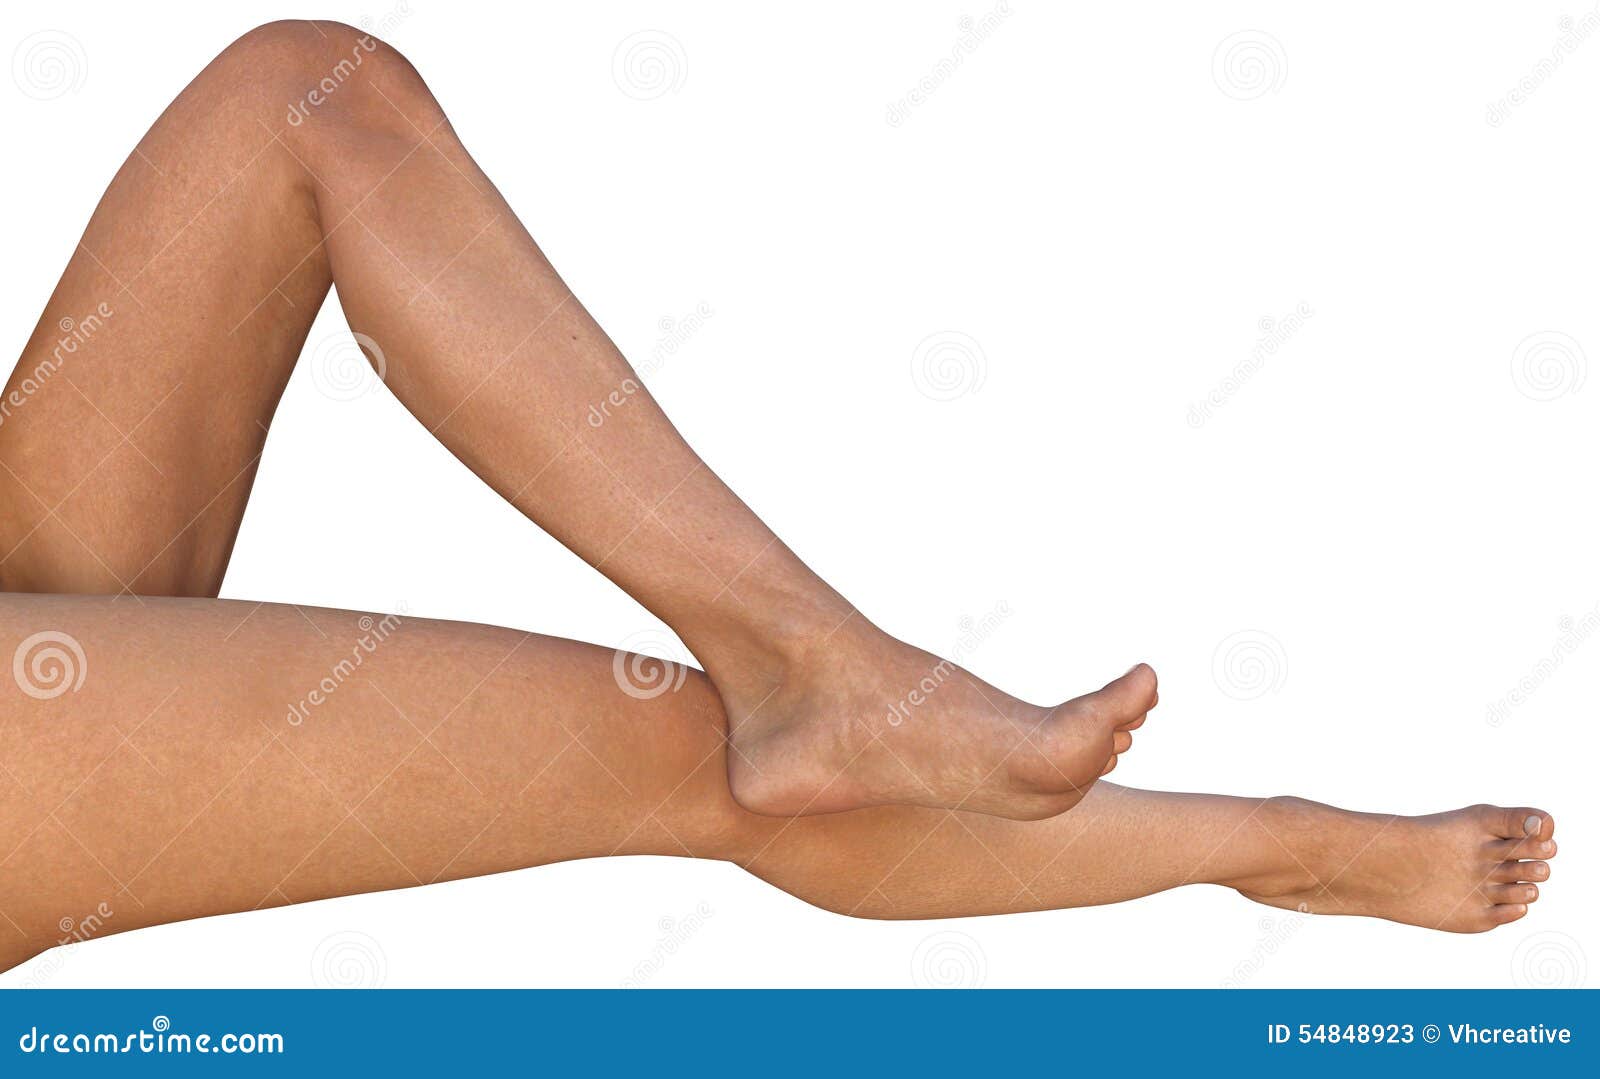 Ляшки 50. Согнутые женские ноги. Женская нога в согнутом виде. Согнутая женская ступня. Голую женщину ножки в коленях согнуты.